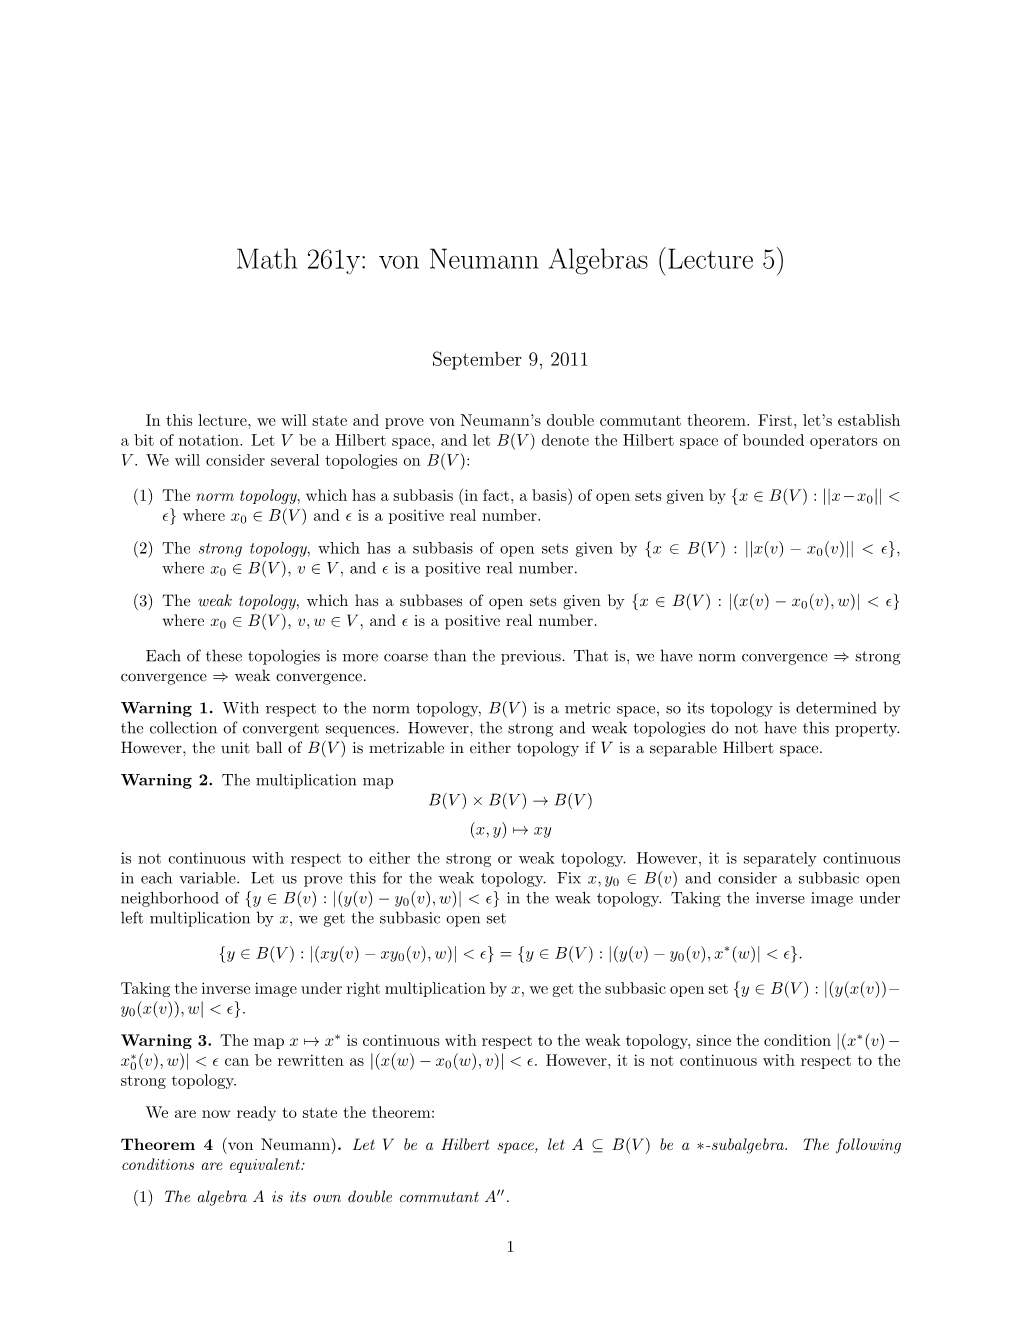 Math 261Y: Von Neumann Algebras (Lecture 5)